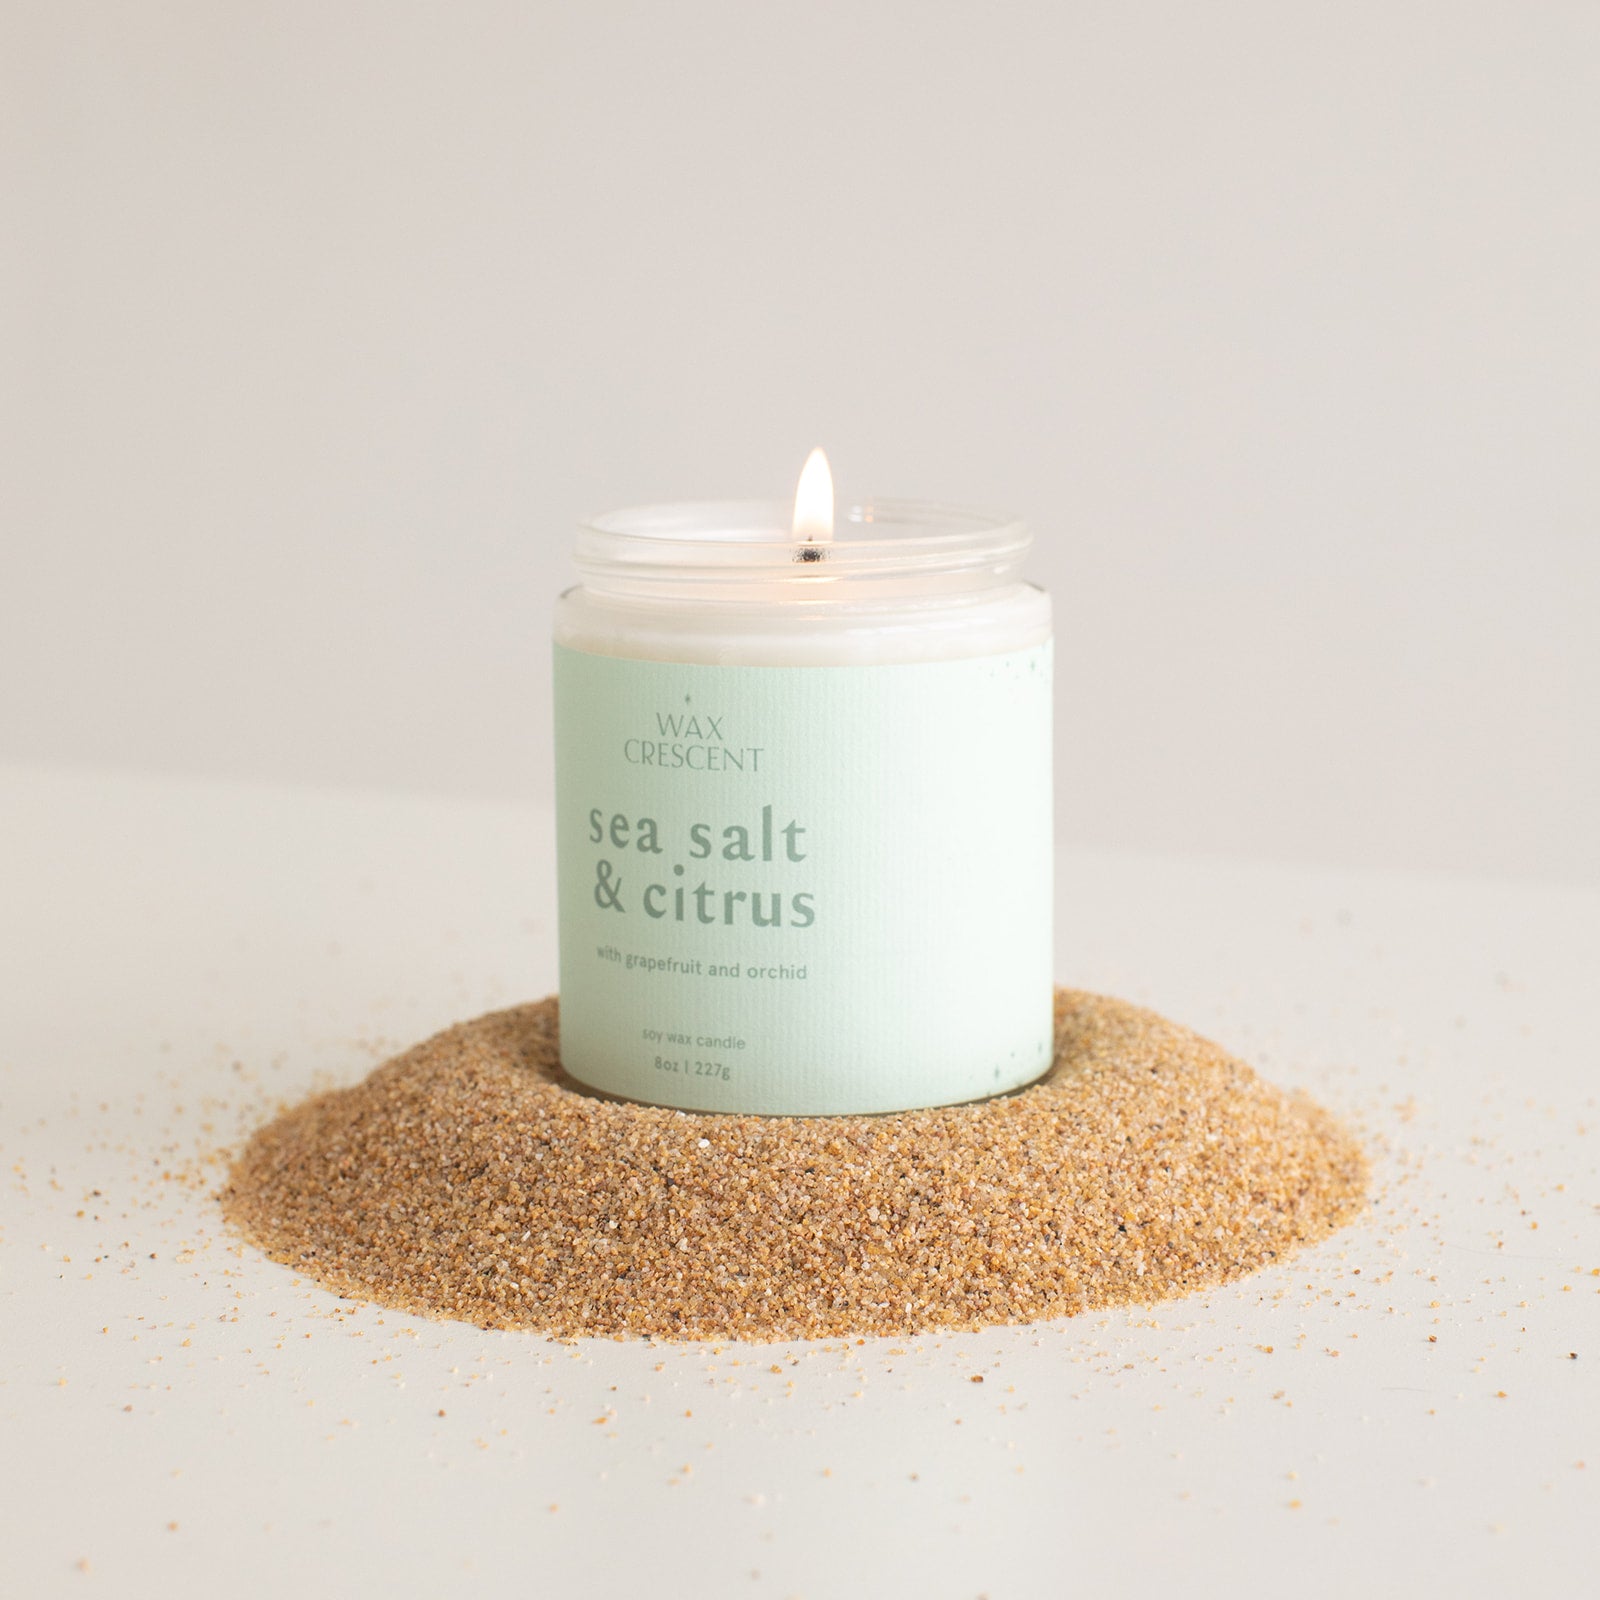 Wax Crescent sea salt & citrus candle 